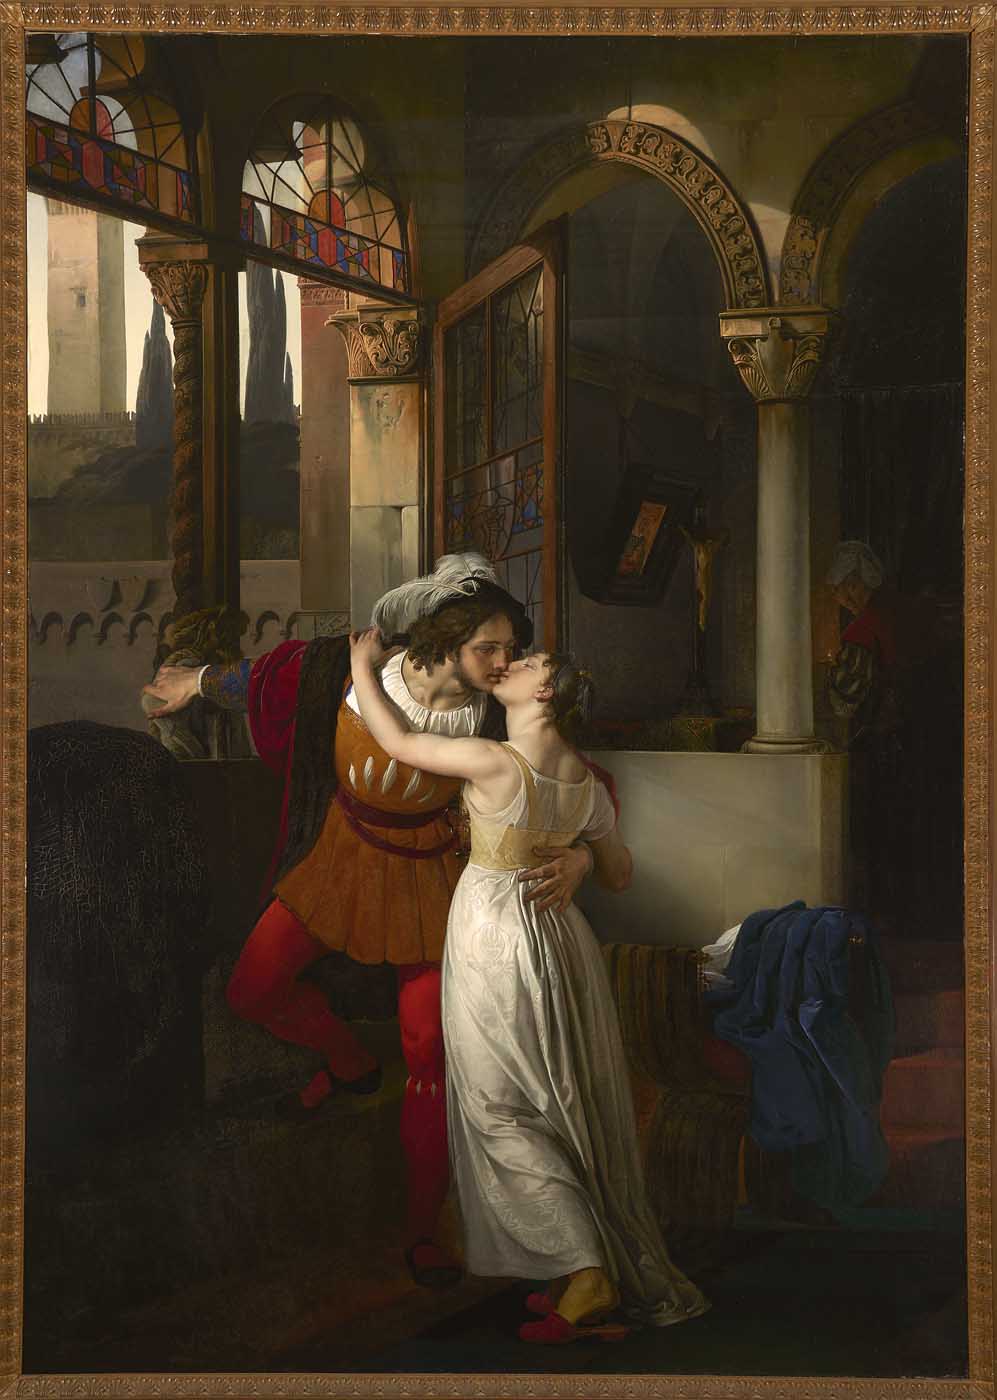 L'ultimo bacio dato a Giulietta da Romeo